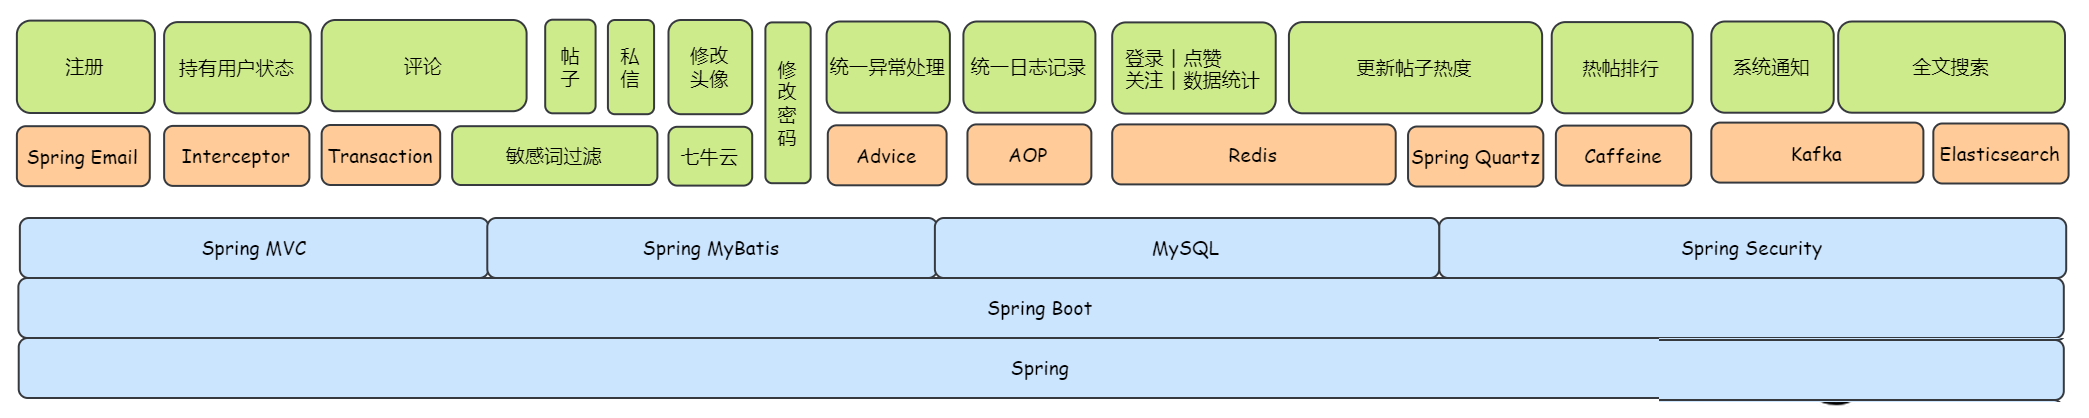 SpringBoot高颜值主流技术栈开源社区系统